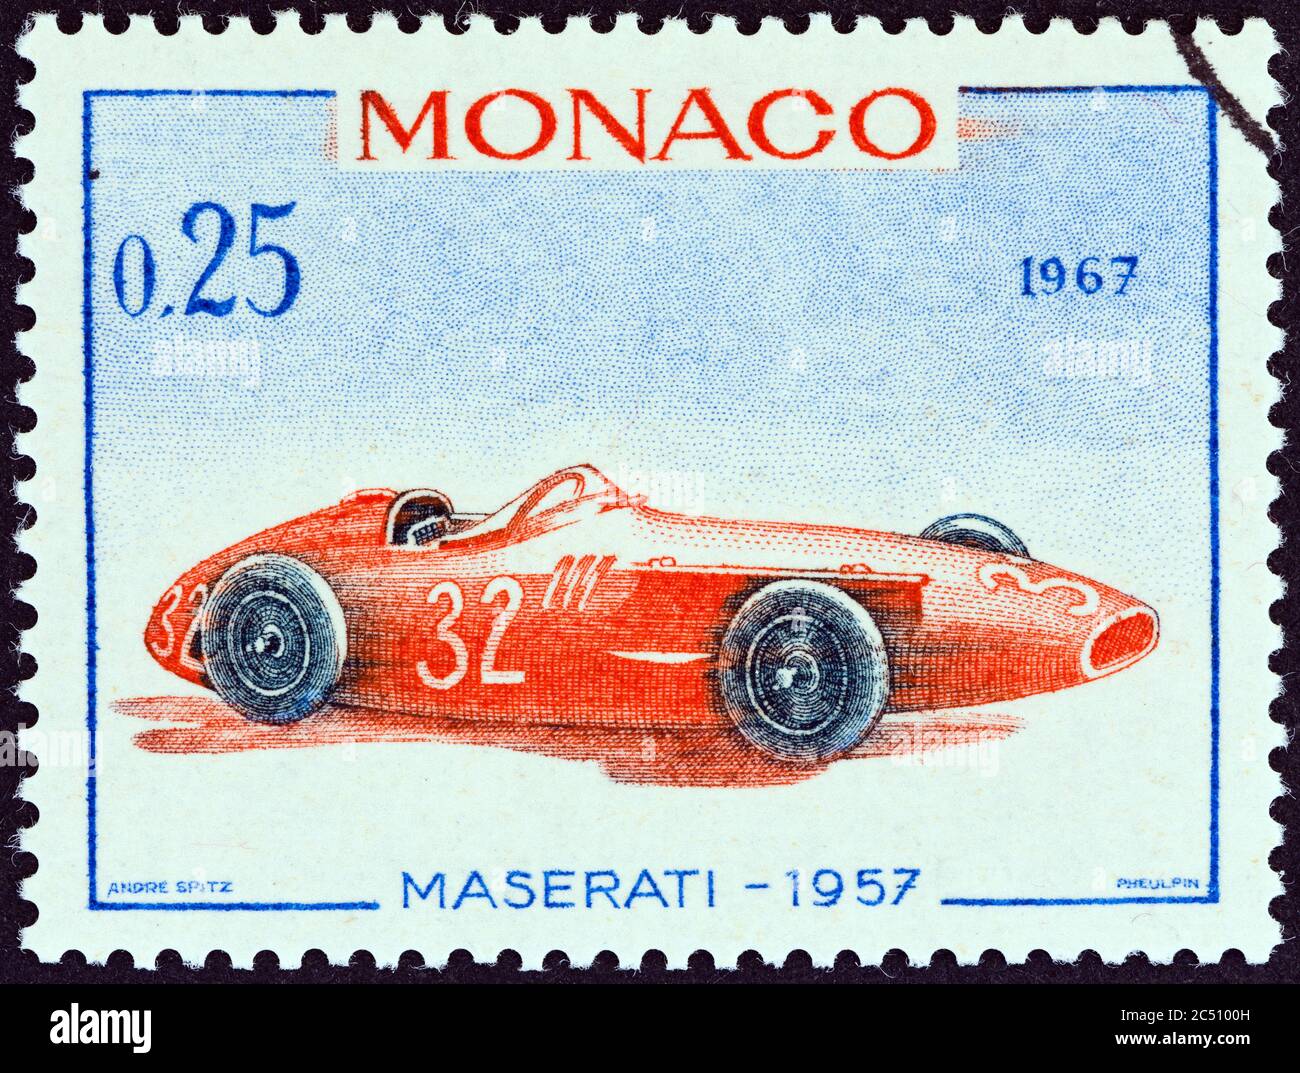 MONACO - CIRCA 1967: A stamp printed in Monaco shows Maserati Grand Prix racing car of 1957, winner of Monaco Grand Prix, circa 1967. Stock Photo